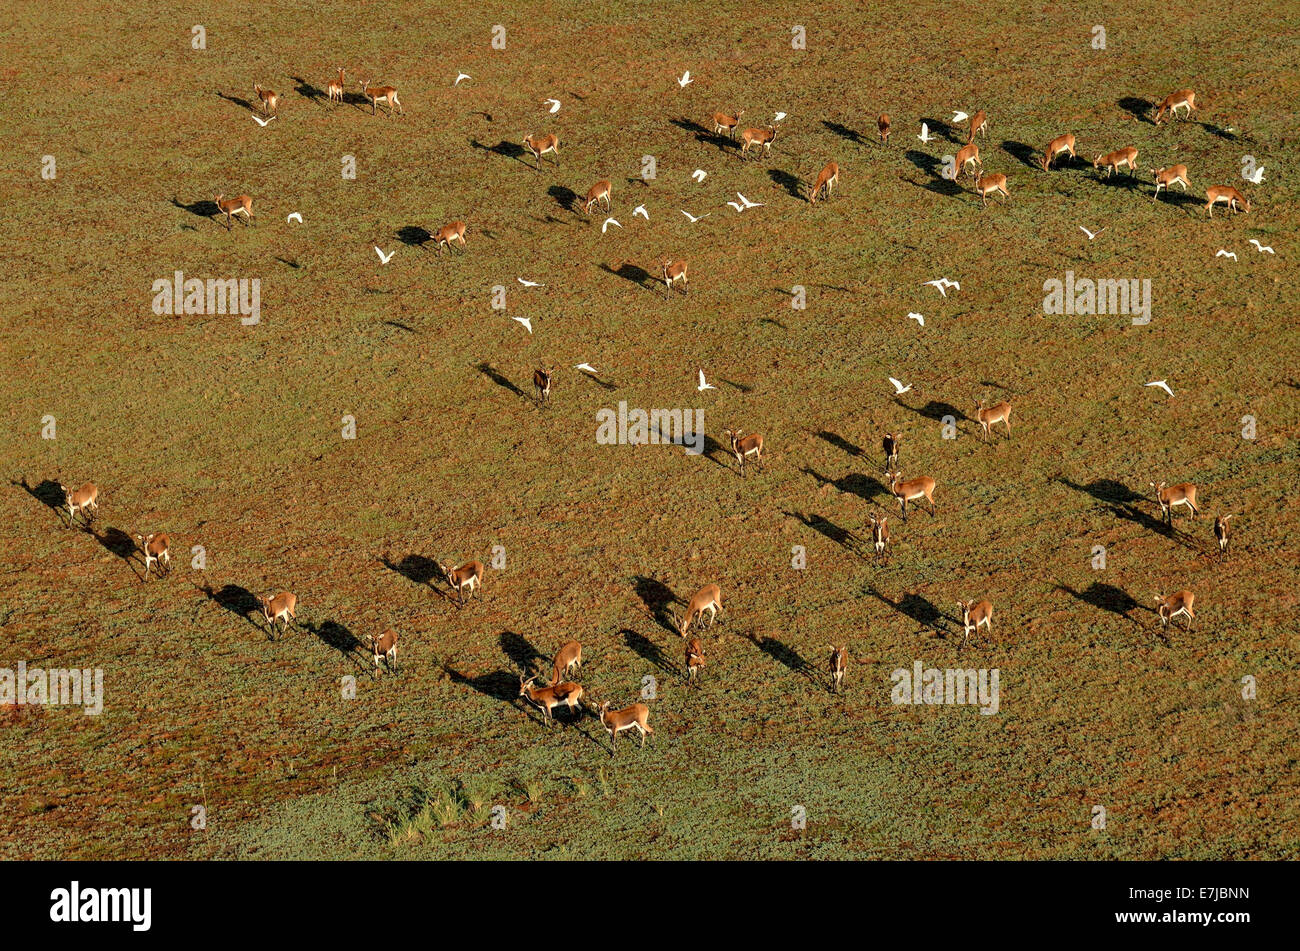 Vista aerea, lechwes nero (Kobus leche smithemani), Bangweulu paludi, Provincia Luapula, Zambia Foto Stock